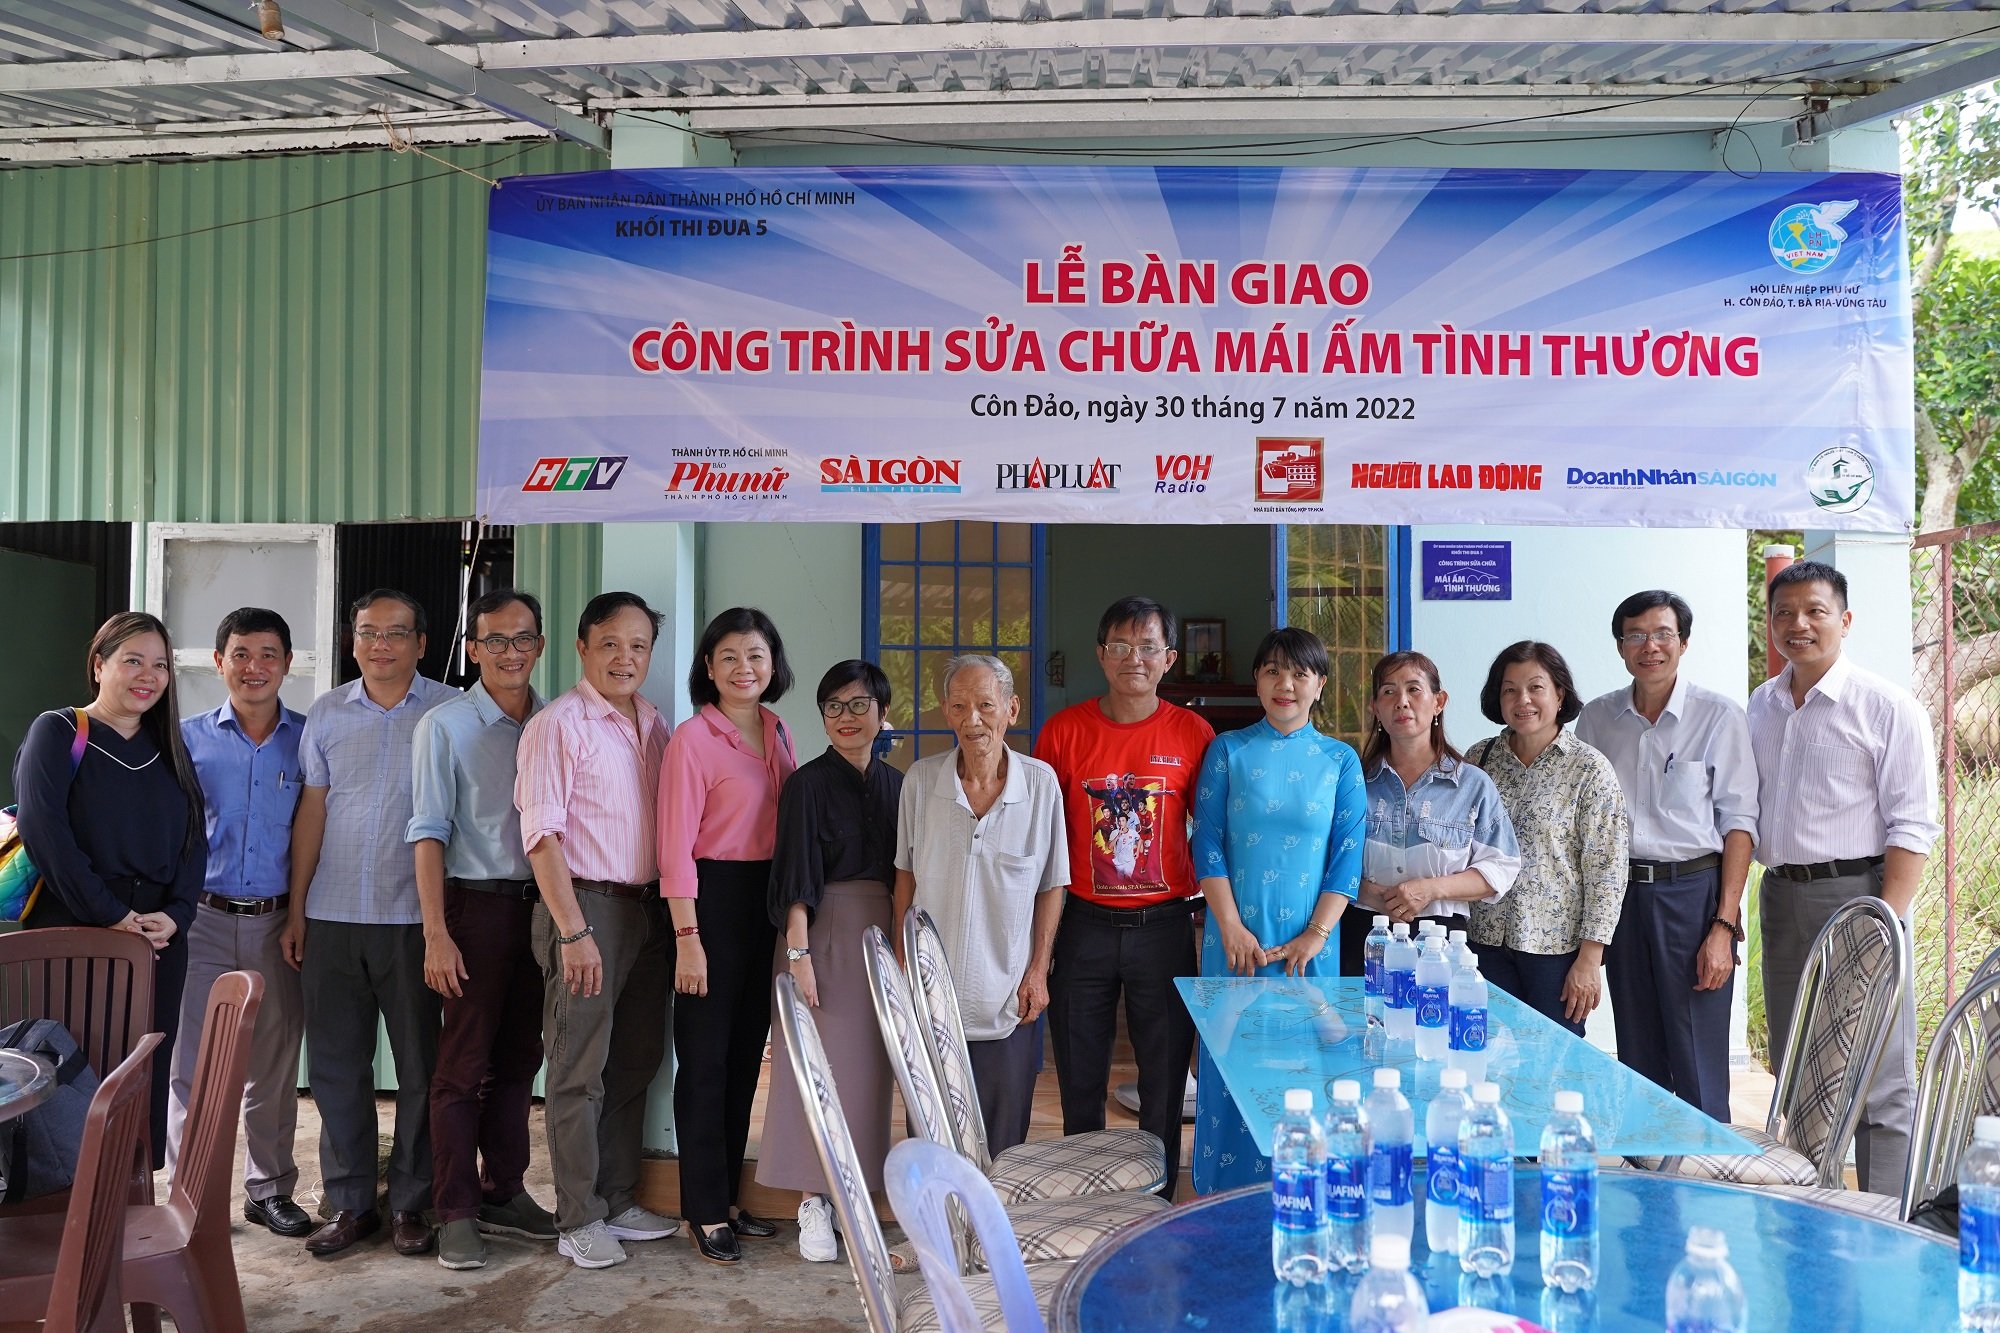 Khối thi đua 5 tổ chức bàn giao công trình sửa chữa mái ấm tình thương cho gia đình chị Nguyễn Thị Thủy, Khu dân cư số 1, huyện Côn Đảo.